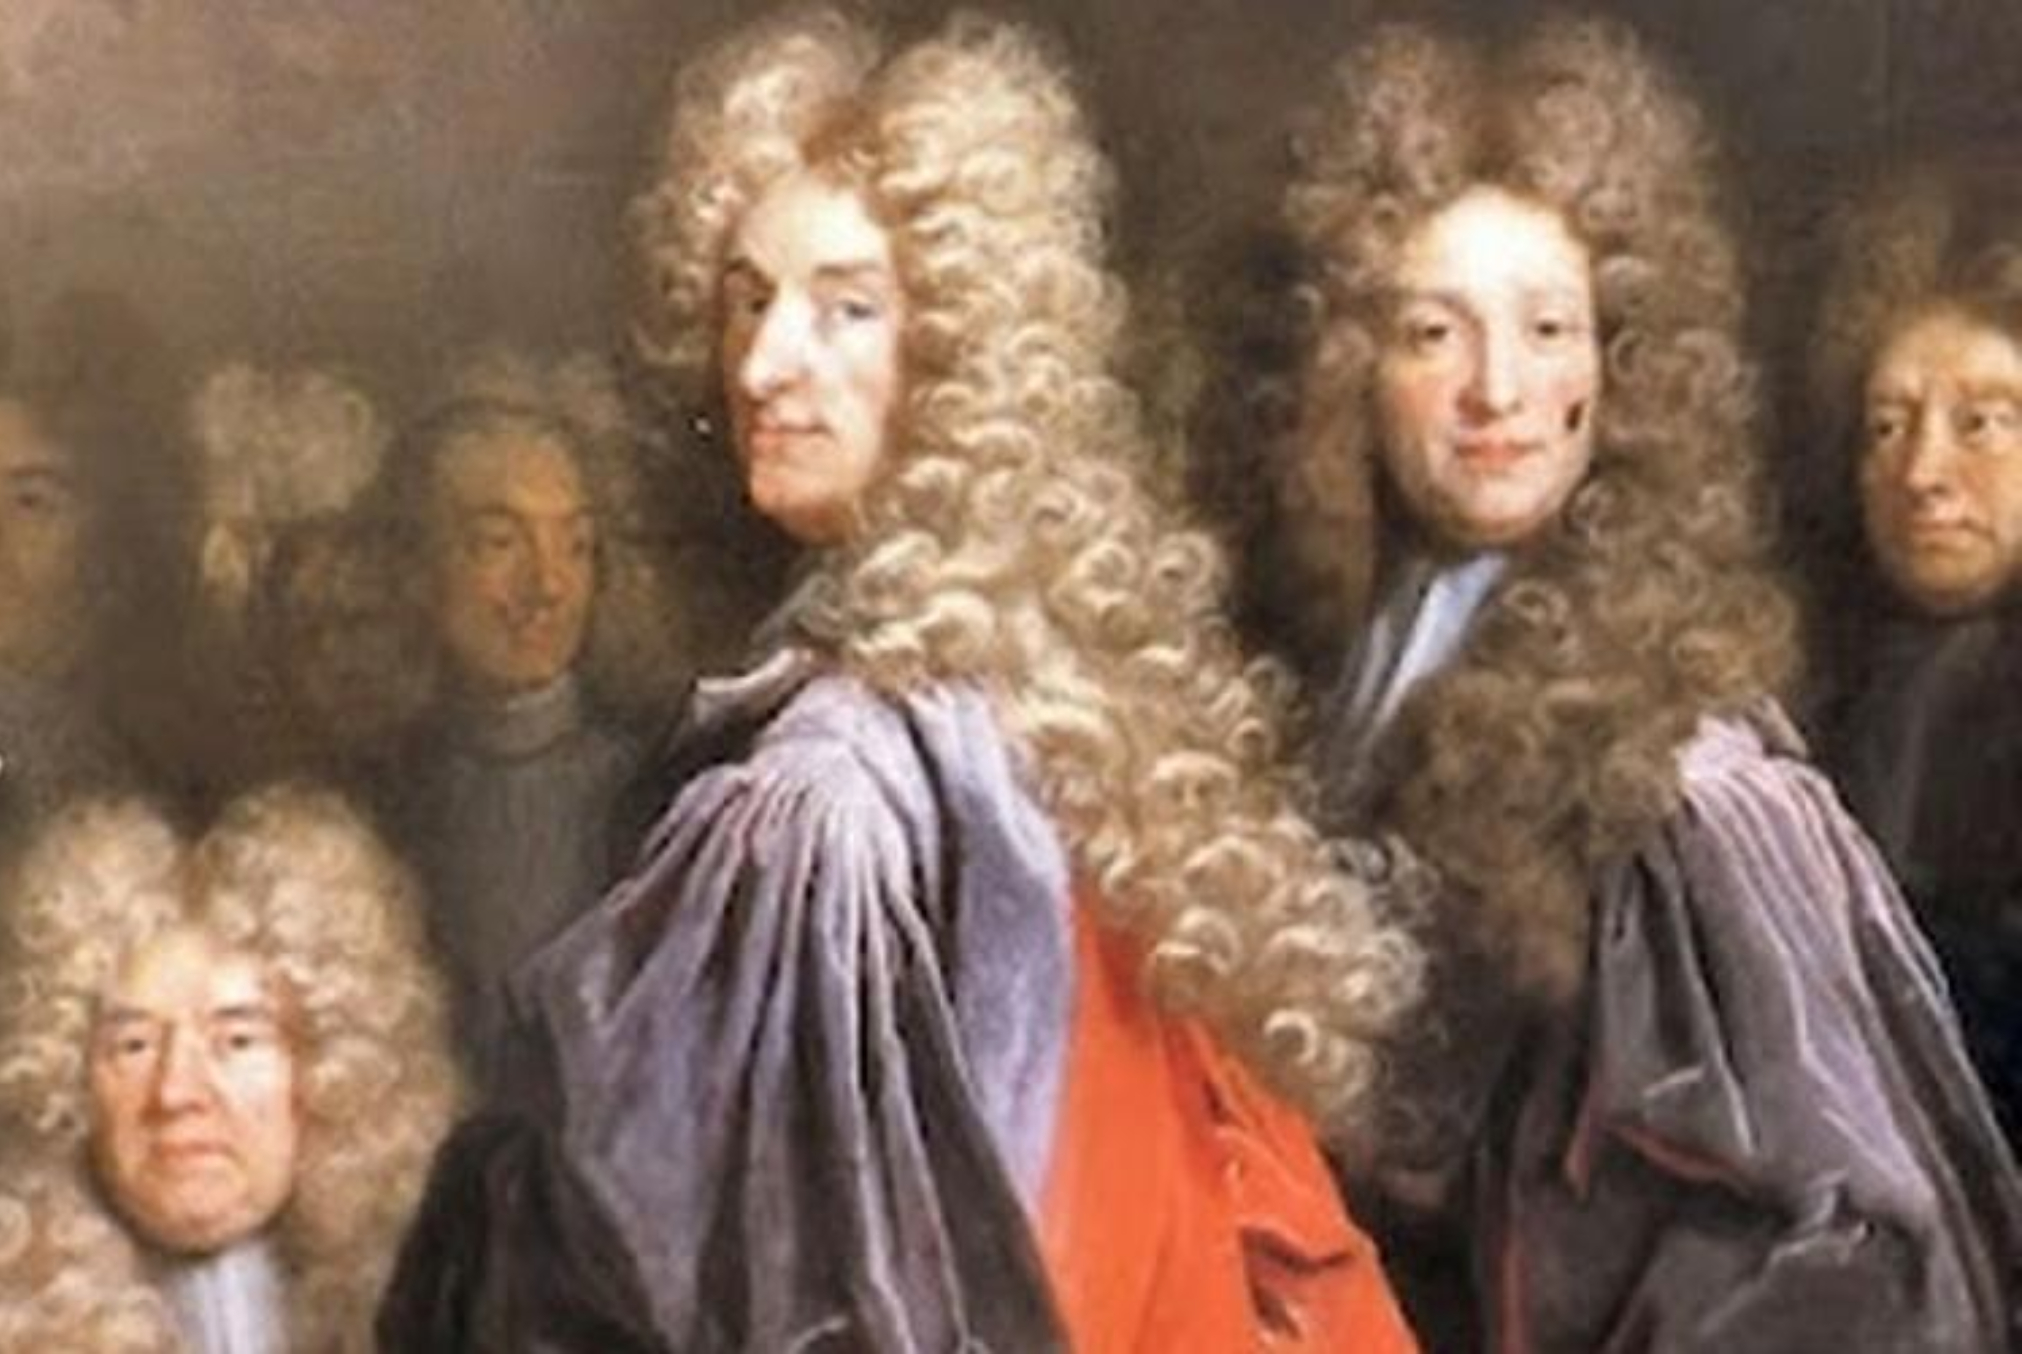 Η ιστορία της περούκας: Έγινε μόδα στις βασιλικές αυλές και ήταν σύμβολο πλούτου και εξουσίας